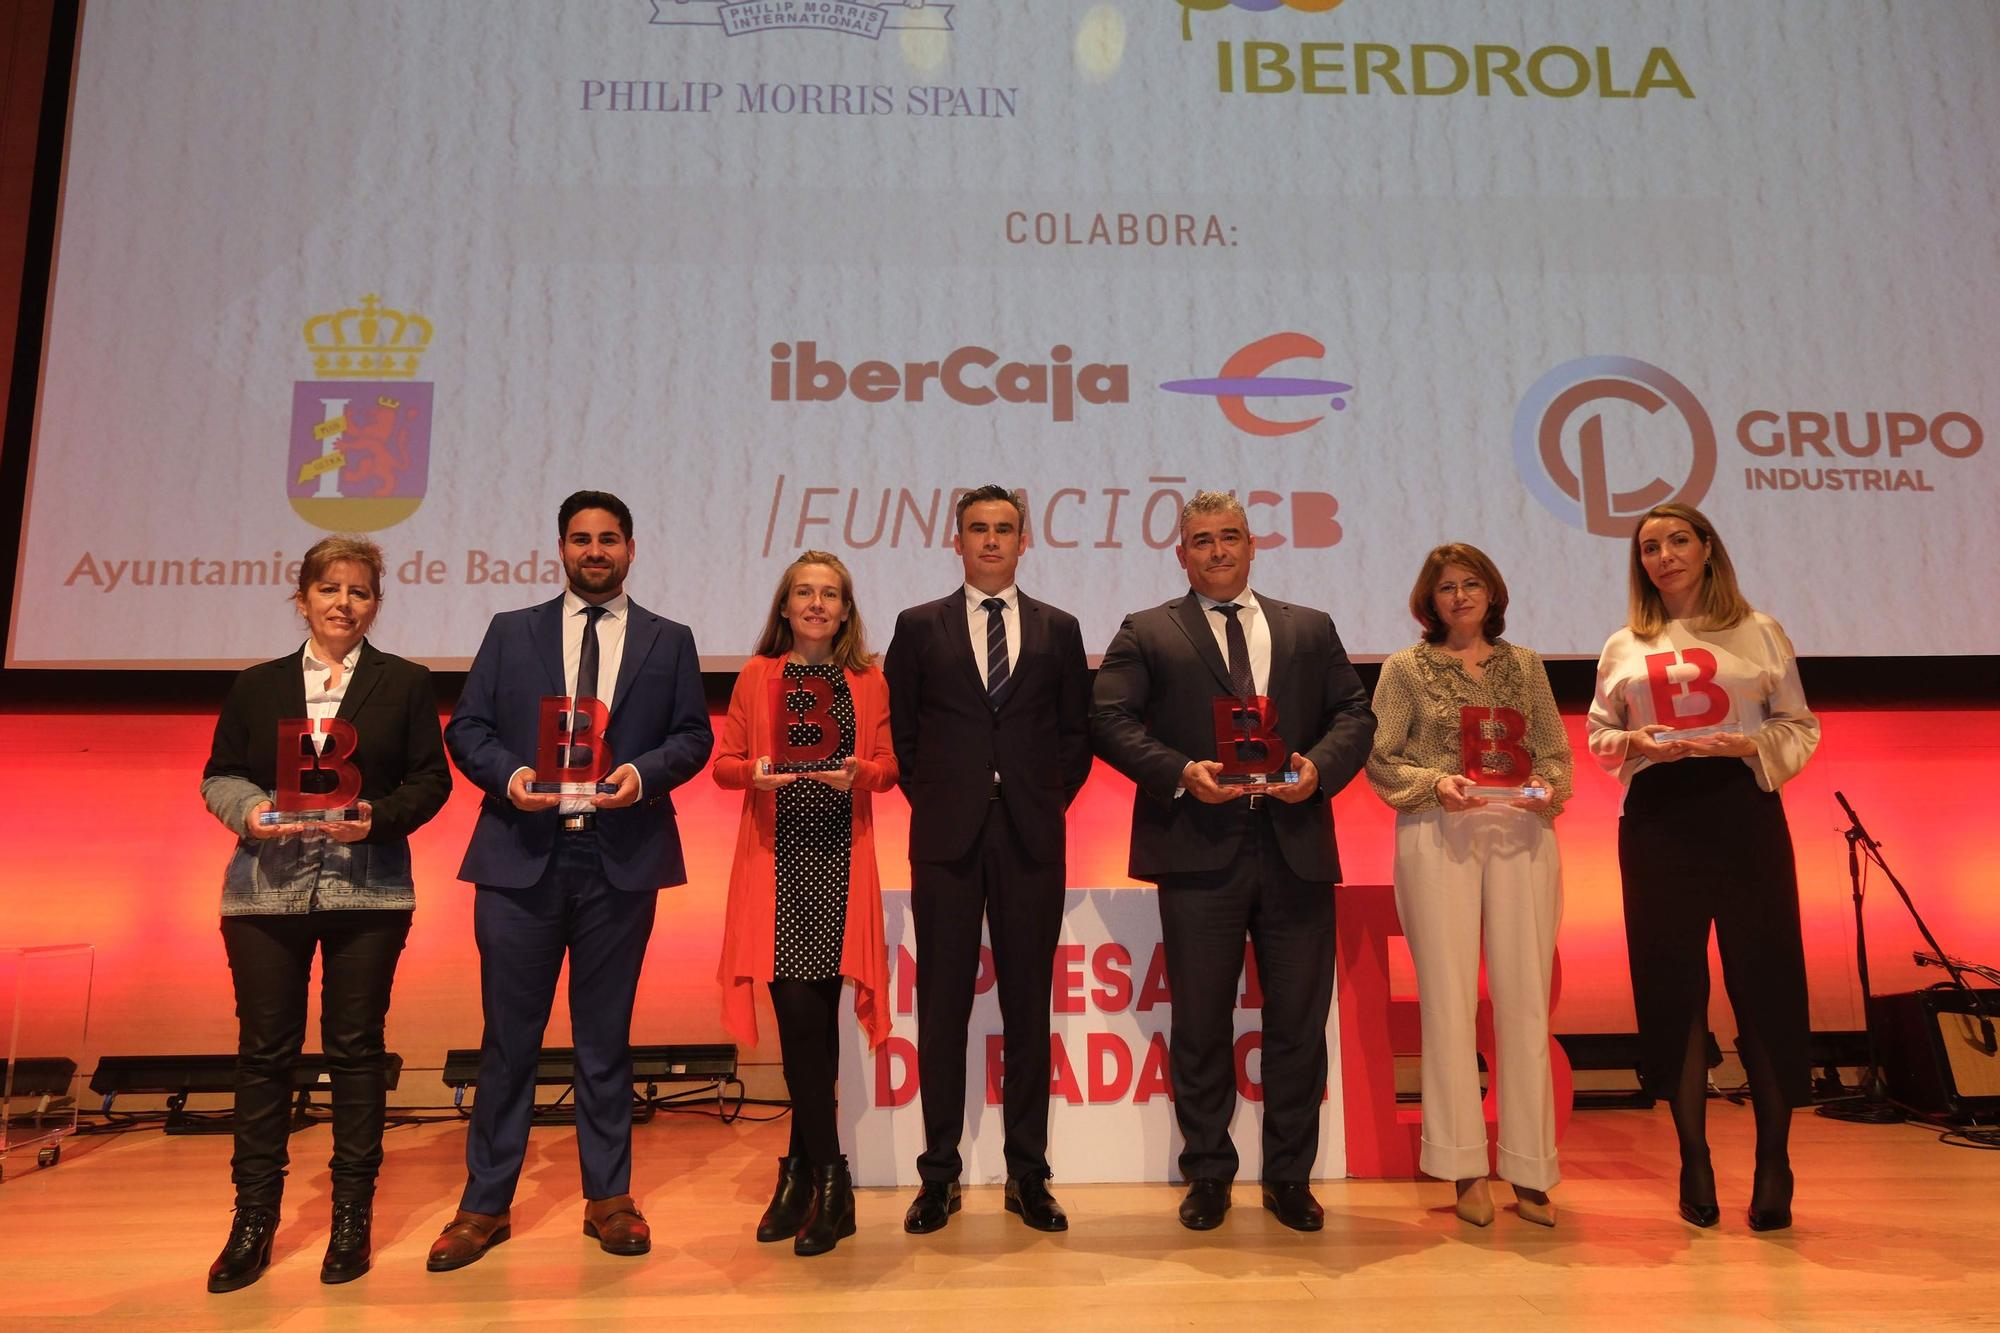 Las imágenes de los XII Premios Empresario de Badajoz